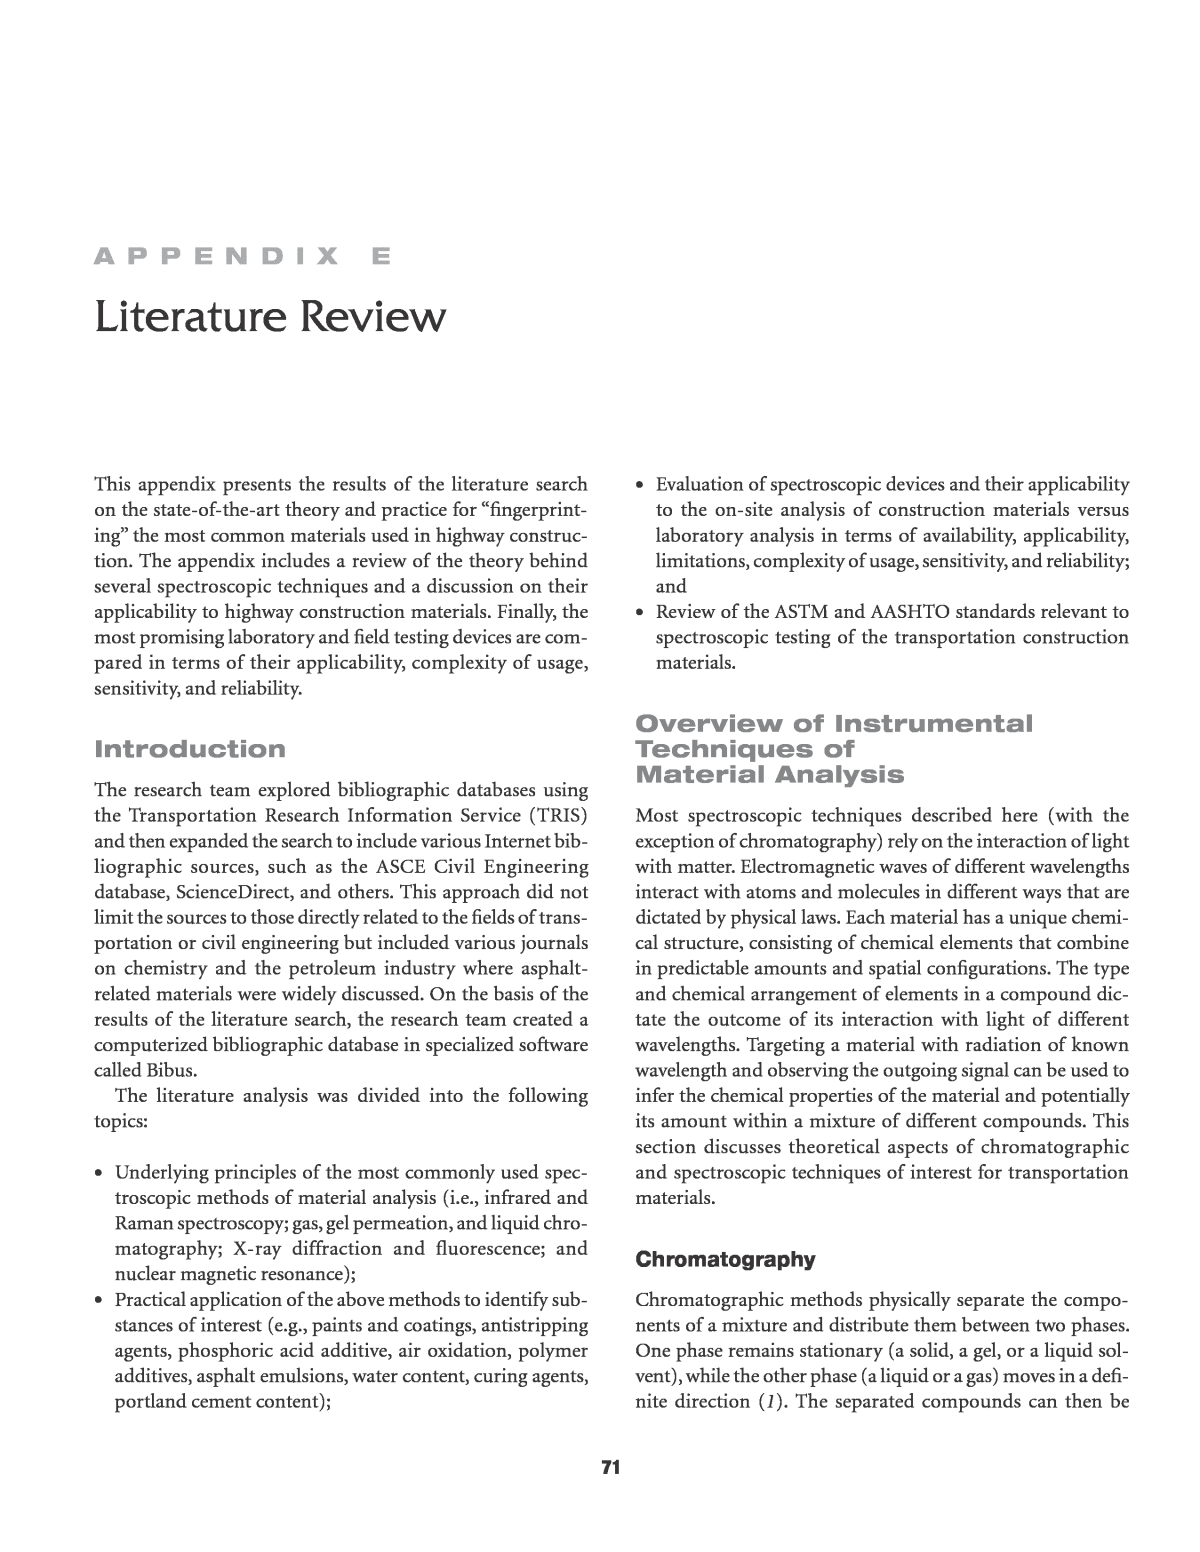 appendix for literature review